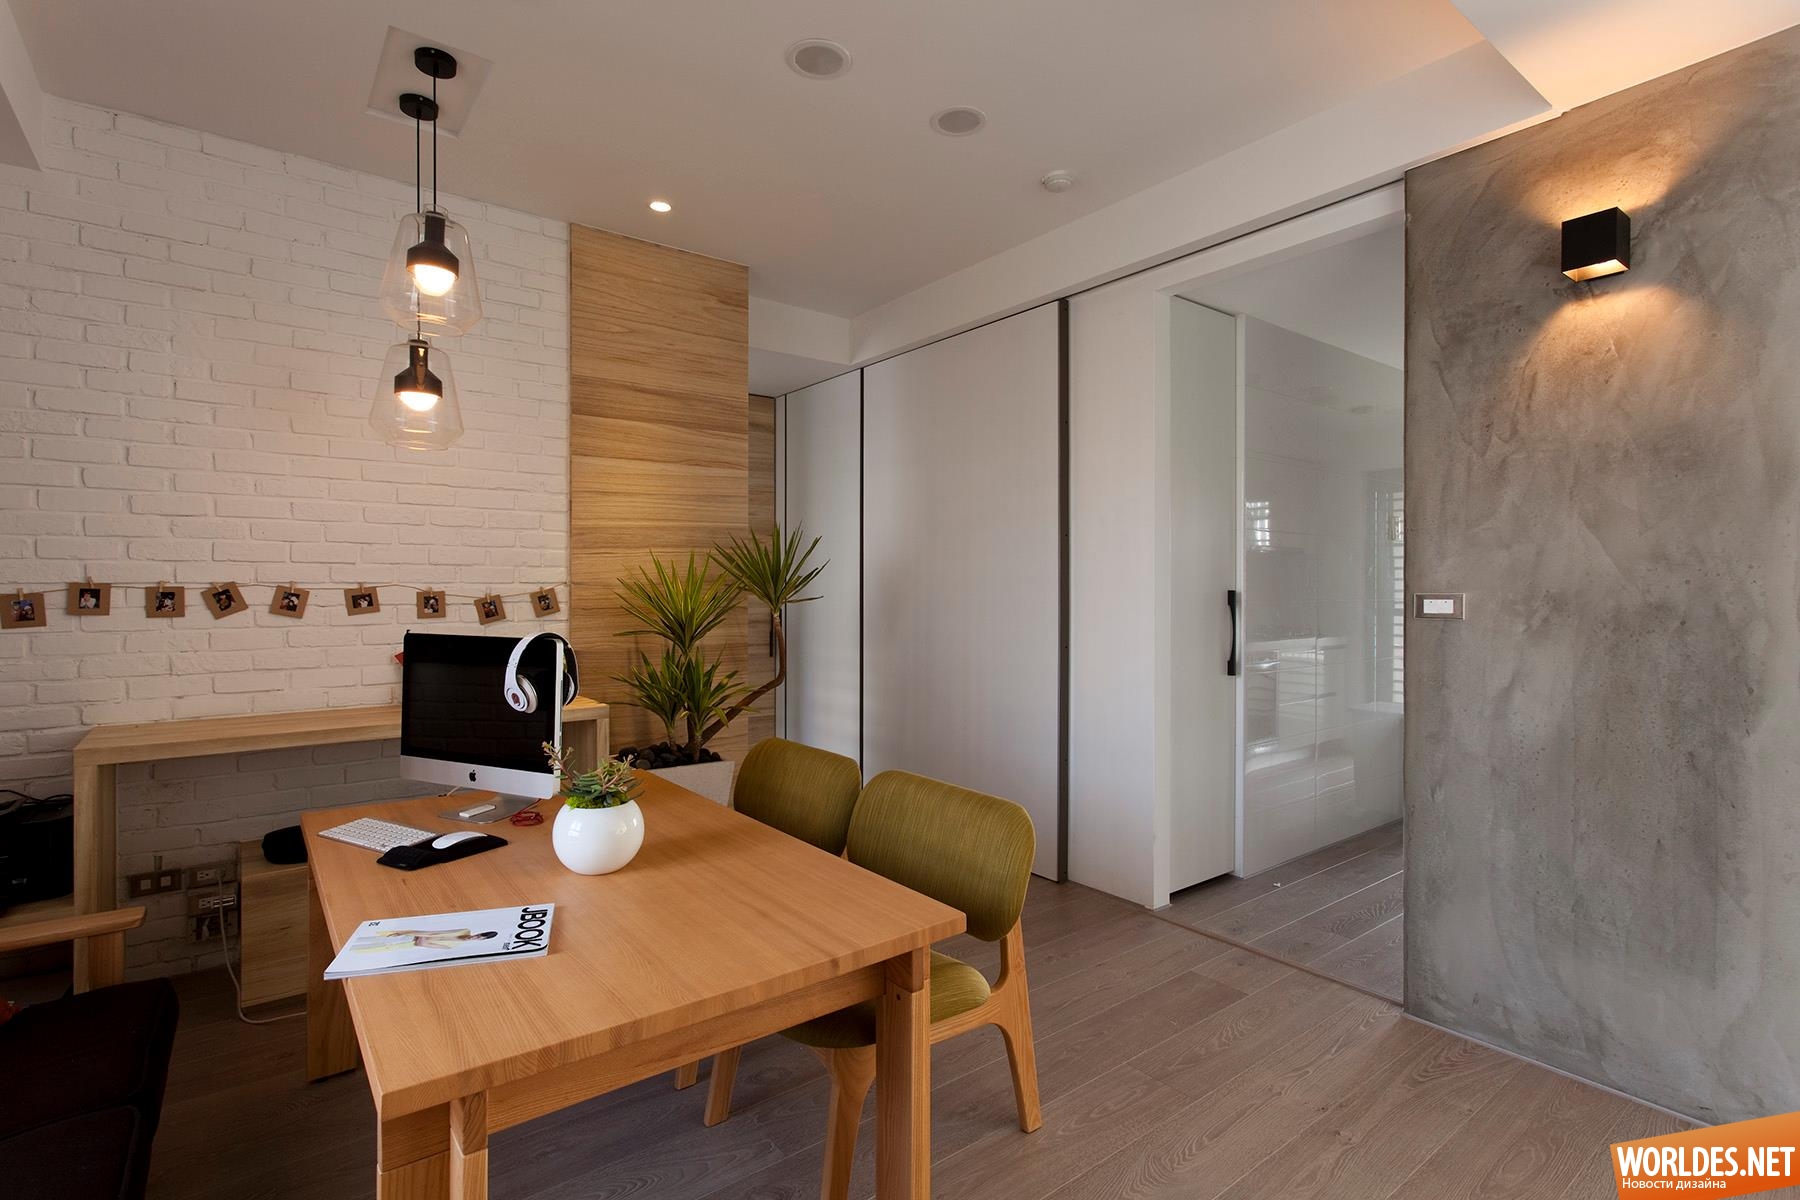 дизайн интерьера квартиры, интерьер квартиры, современный интерьер, уютный интерьер, минималистский интерьер, простой интерьер